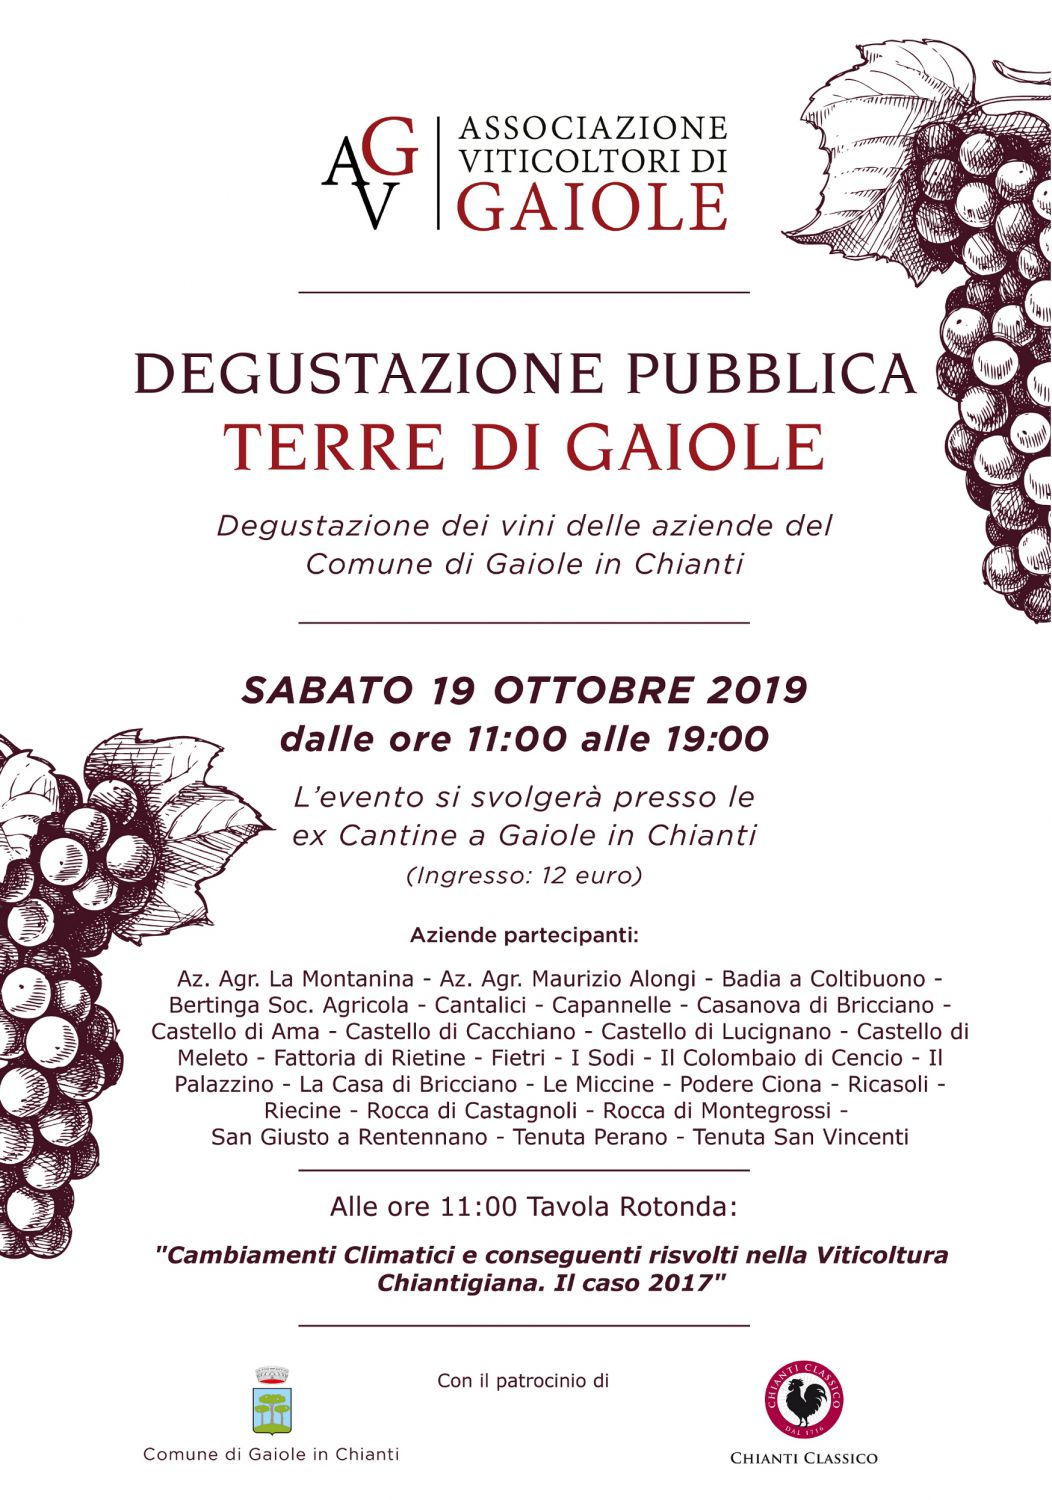  Save the Date 19/10/19: Public Tasting Terre di Gaiole